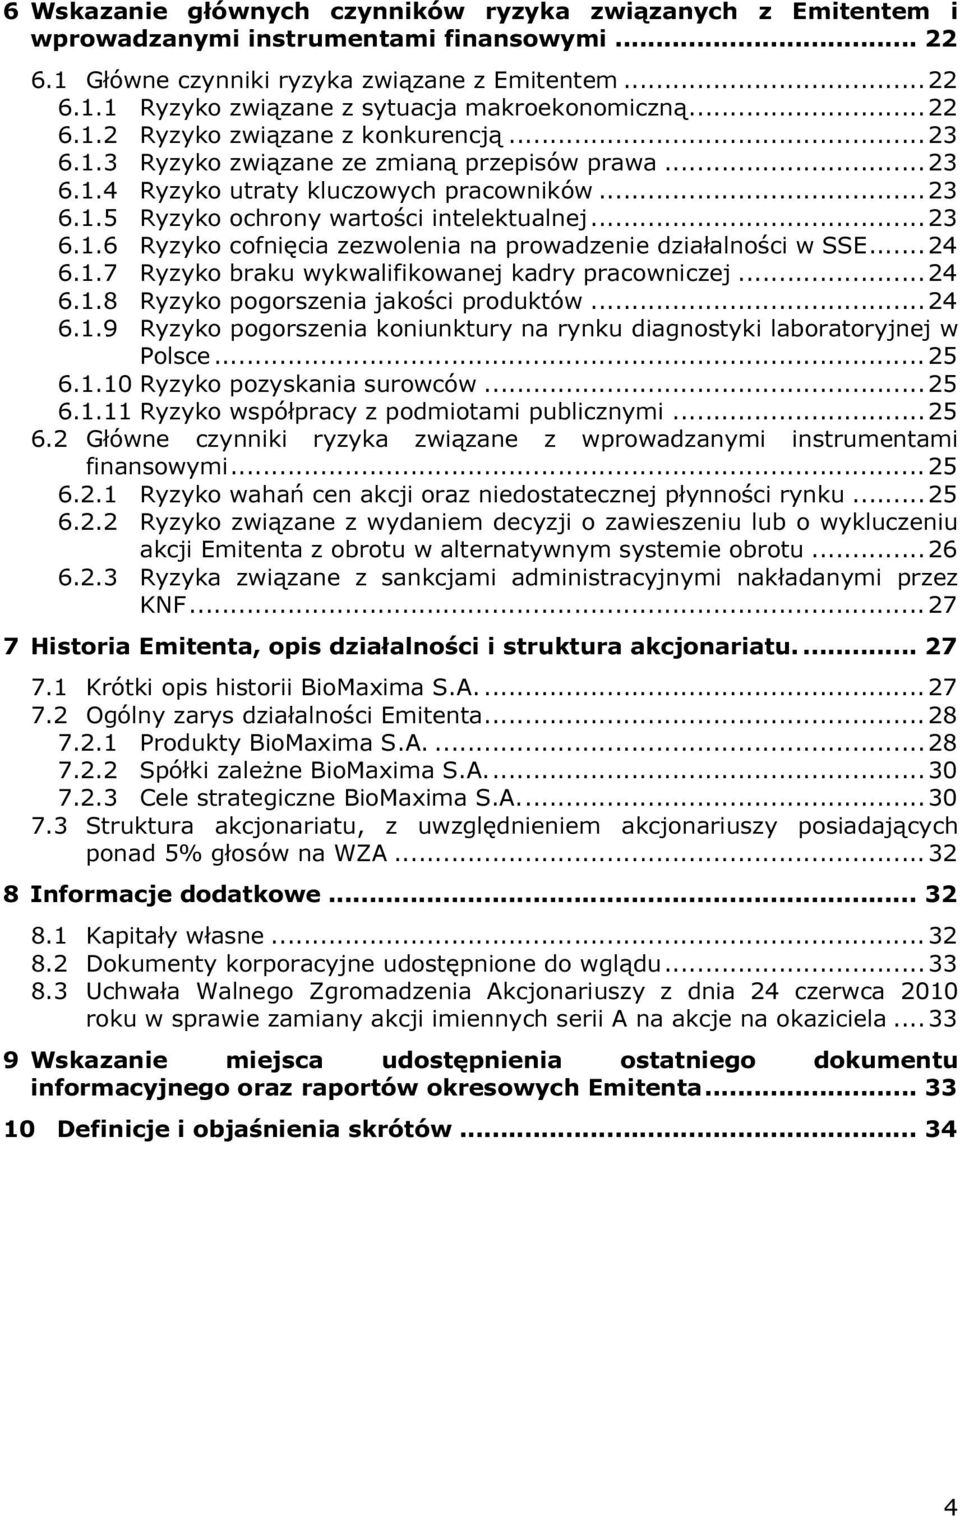 .. 23 6.1.6 Ryzyko cofnięcia zezwolenia na prowadzenie działalności w SSE... 24 6.1.7 Ryzyko braku wykwalifikowanej kadry pracowniczej... 24 6.1.8 Ryzyko pogorszenia jakości produktów... 24 6.1.9 Ryzyko pogorszenia koniunktury na rynku diagnostyki laboratoryjnej w Polsce.